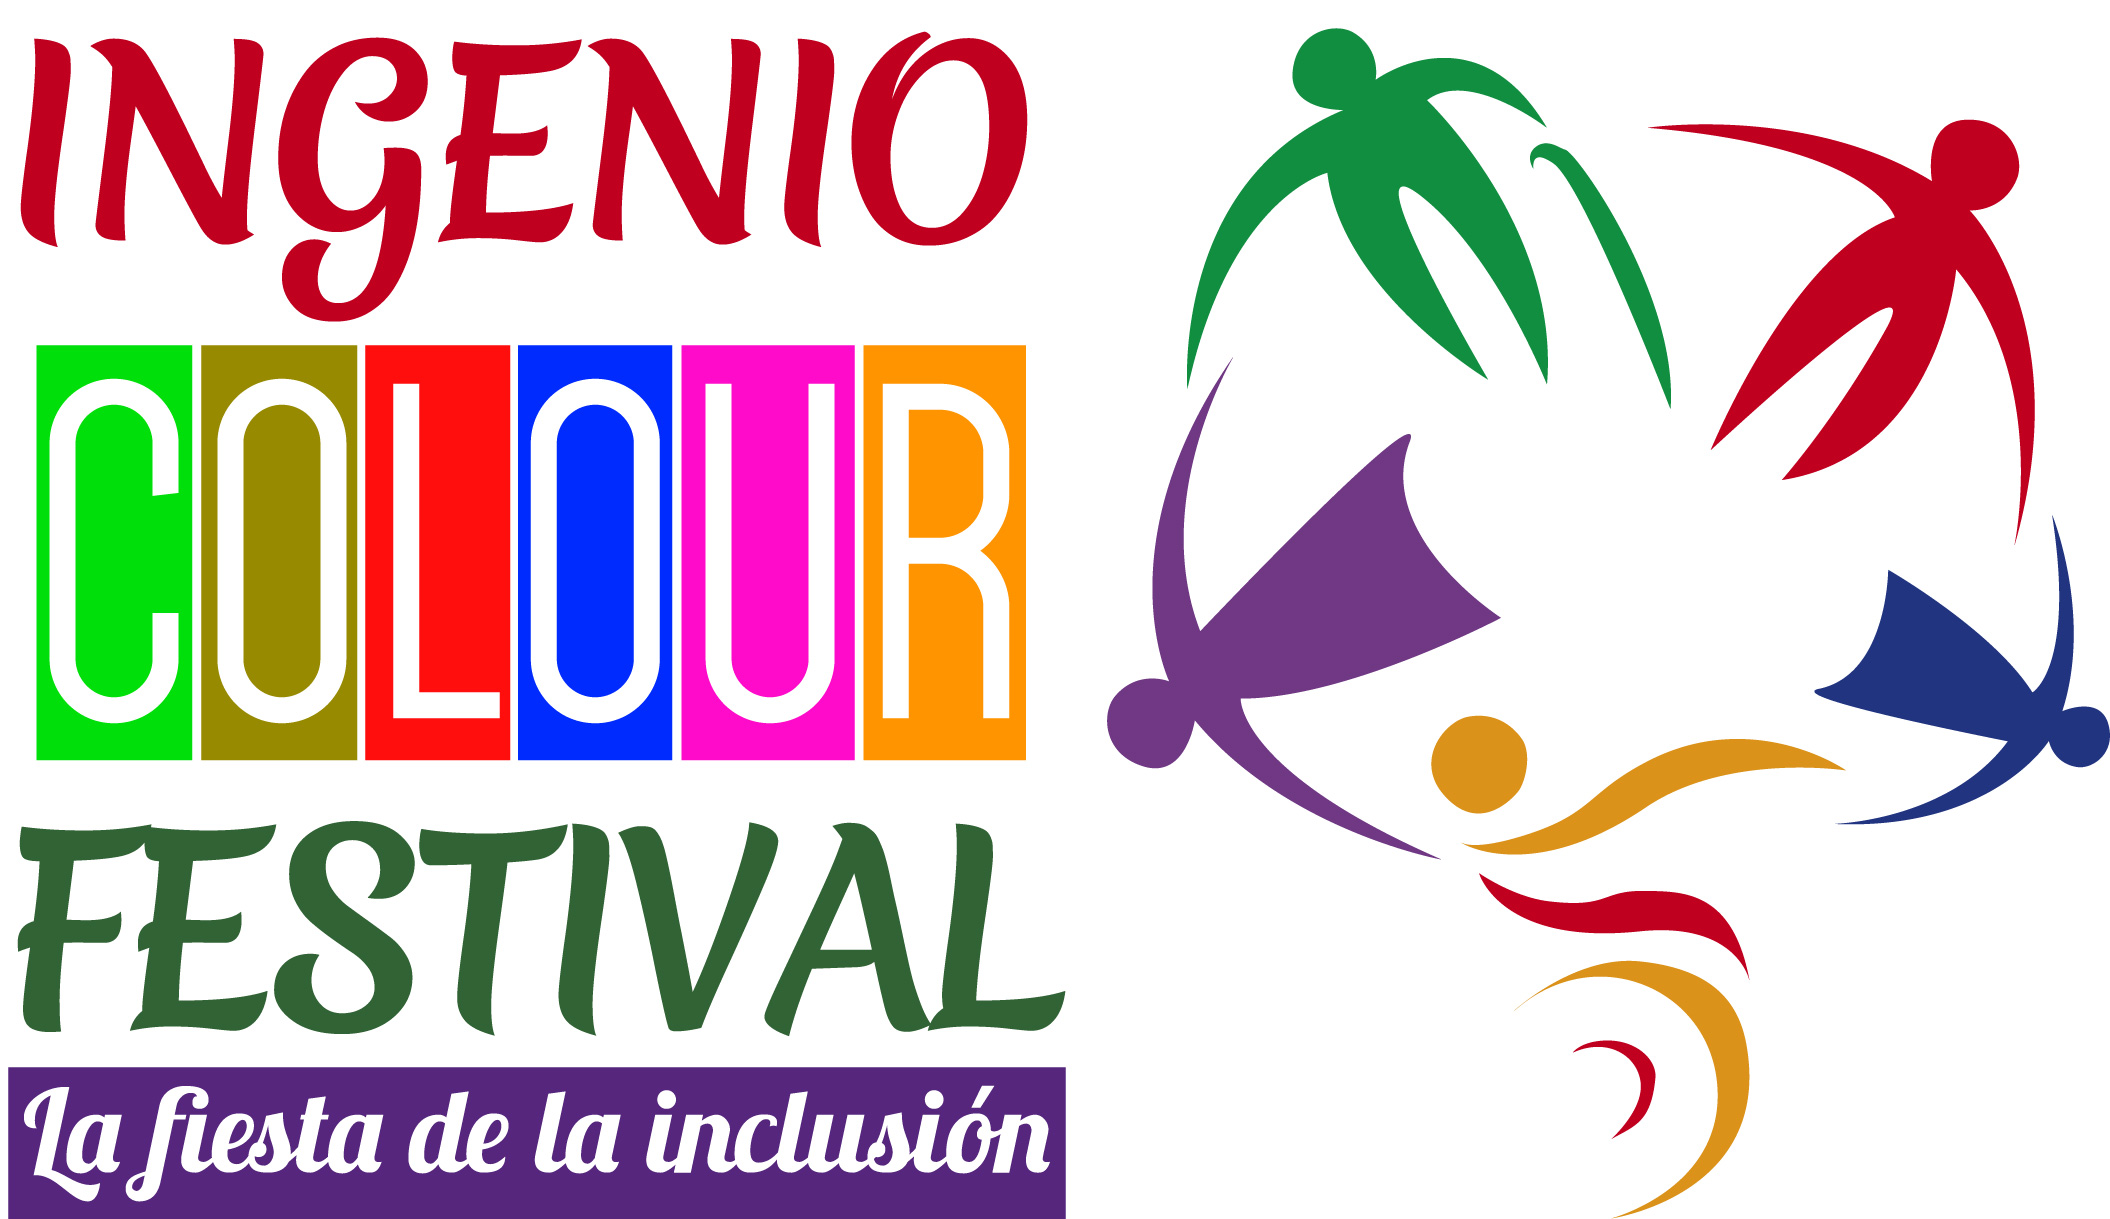 logo_ingenio_colour_festival_horizontal_fondoblanco